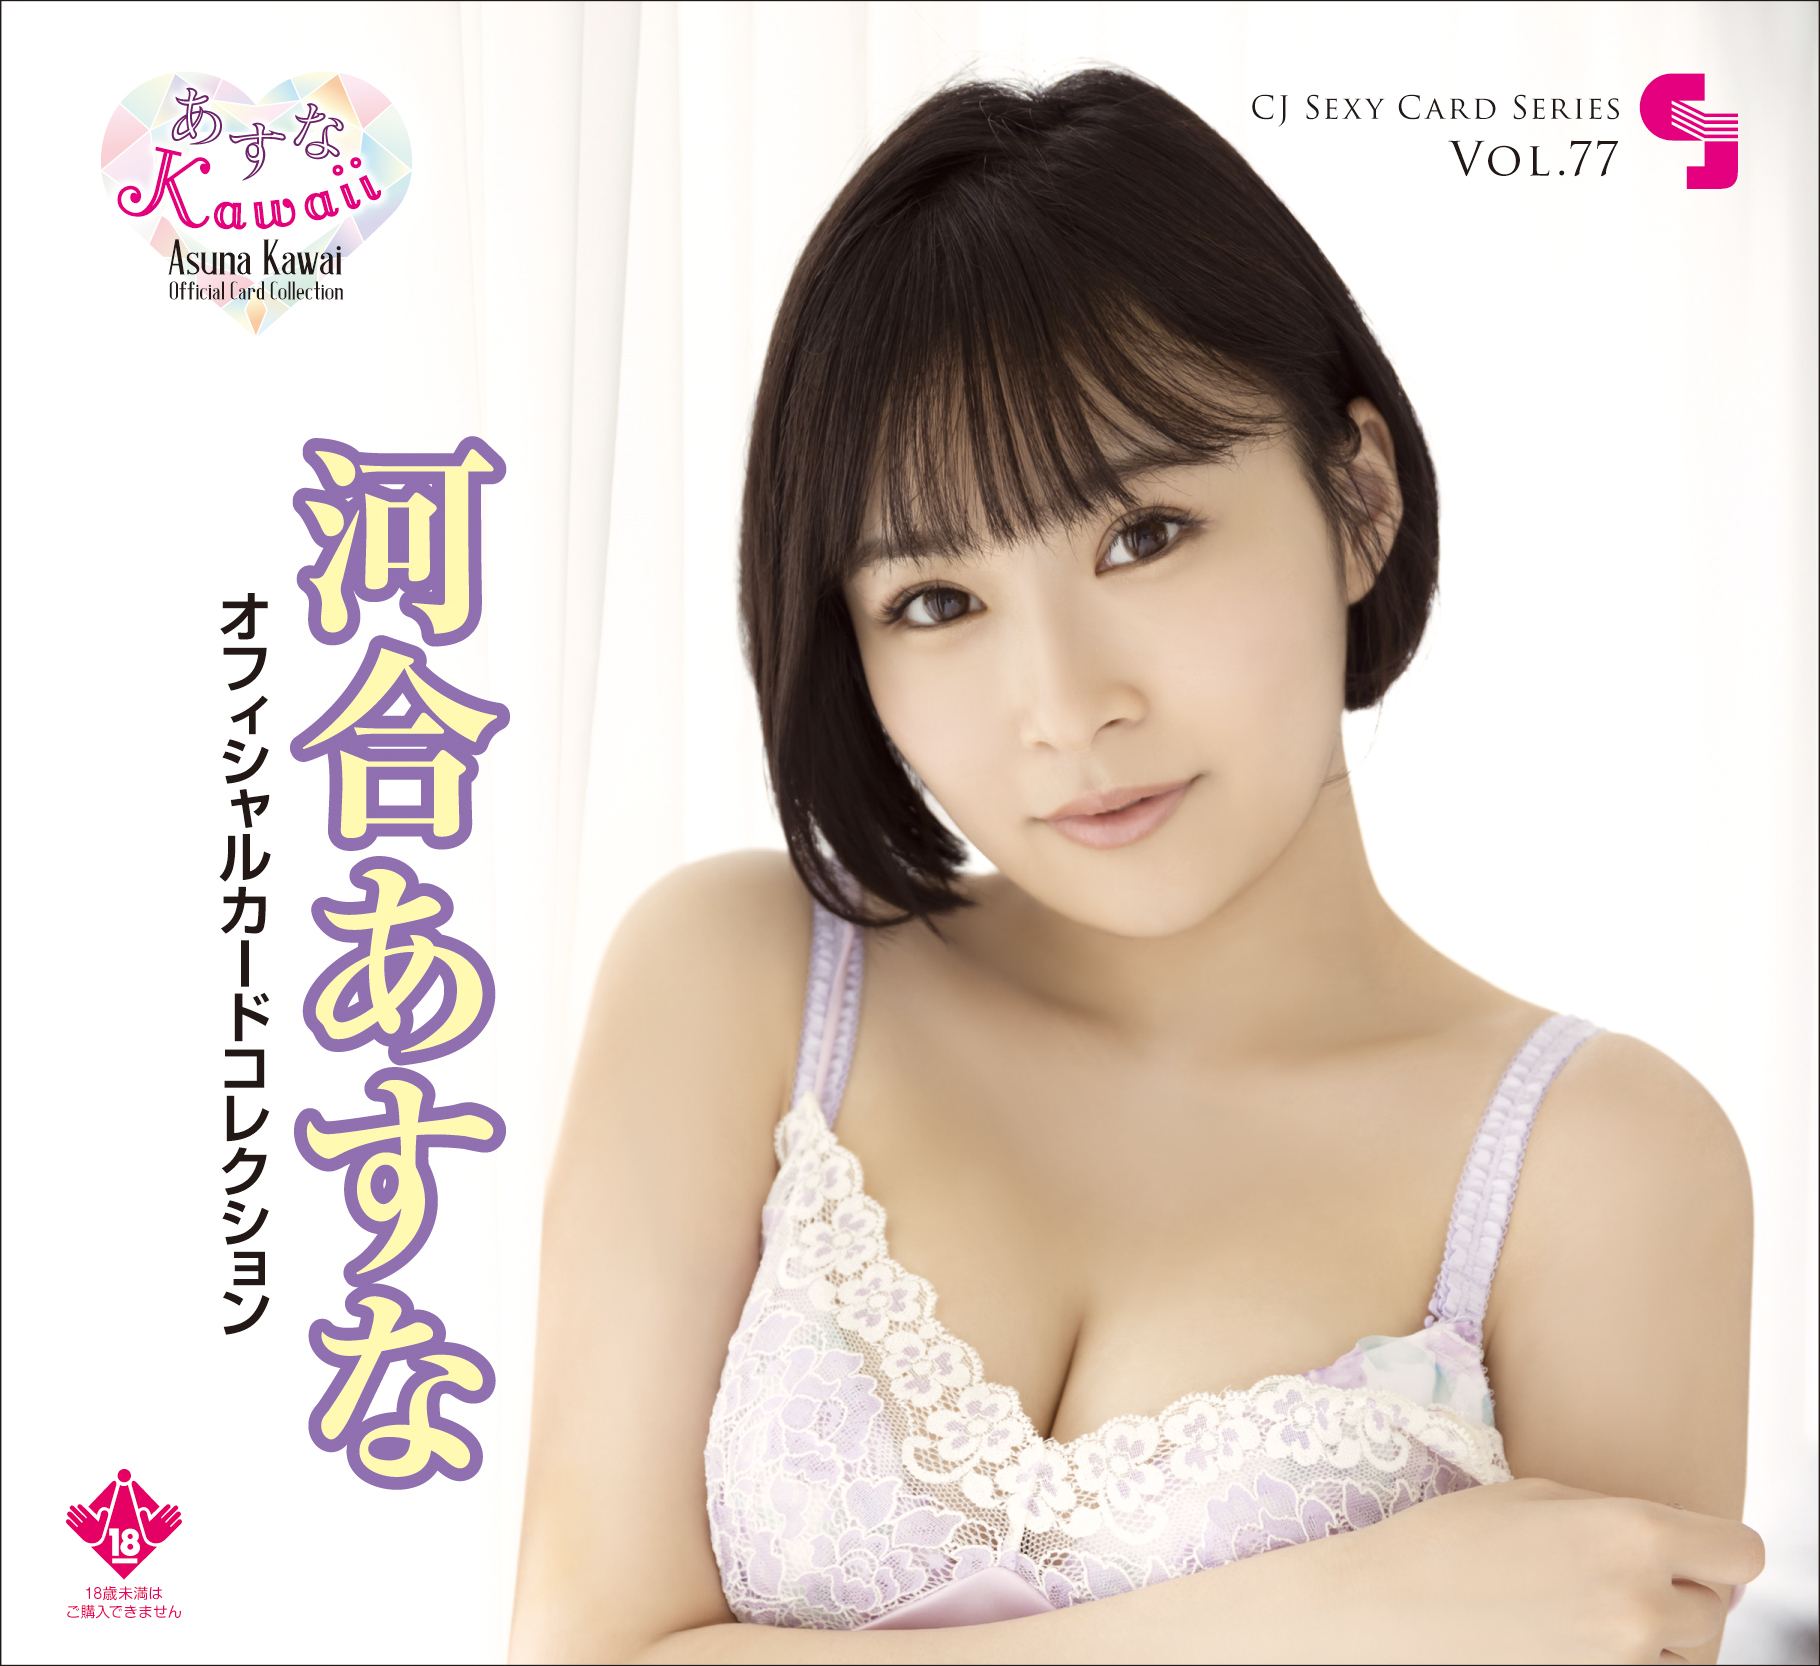 CJ Sexy Card Series Vol. 77 Asuna Kawai Official Card Collection -Asuna Kawaii- (Set of 12 packs) Jyutoku